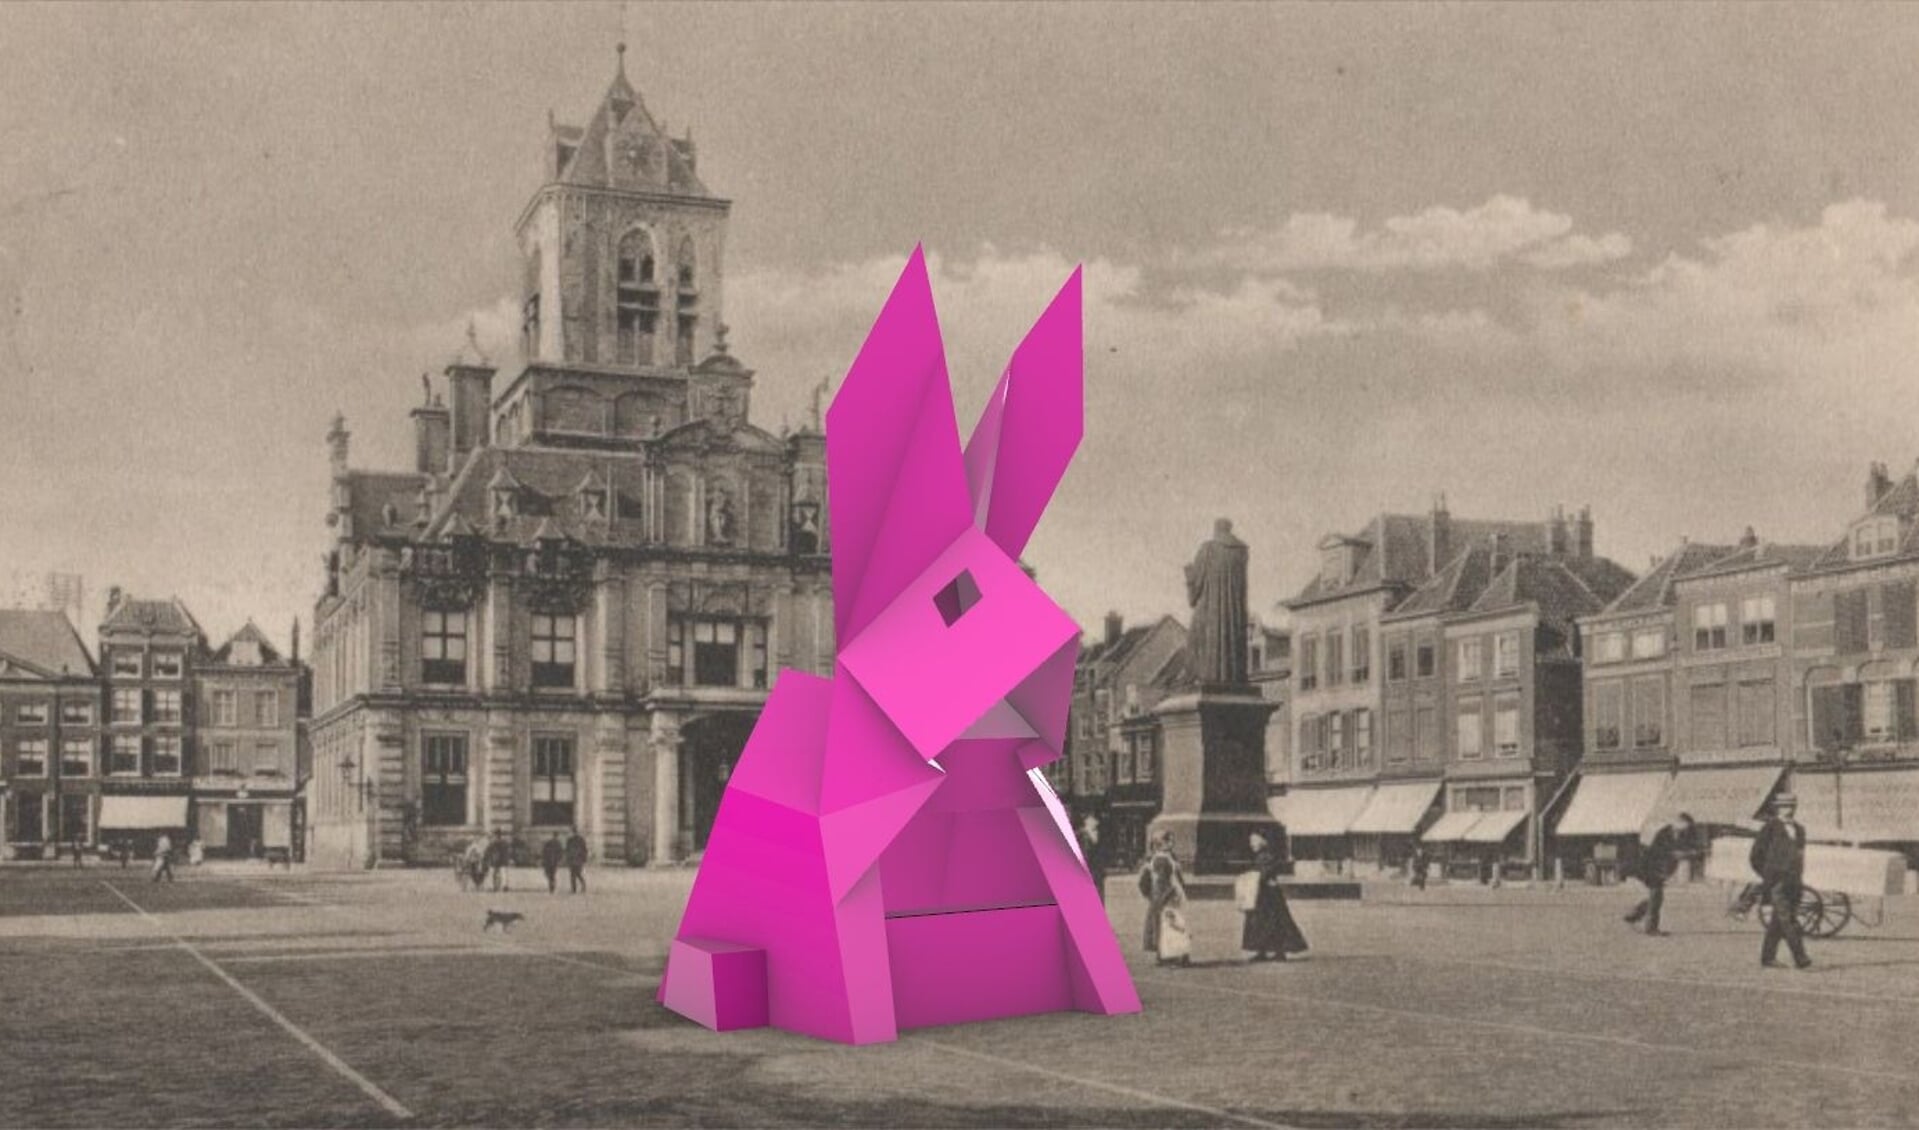 Het konijn komt voort uit een samenwerking tussen TU Delft en Delft Fringe Festival